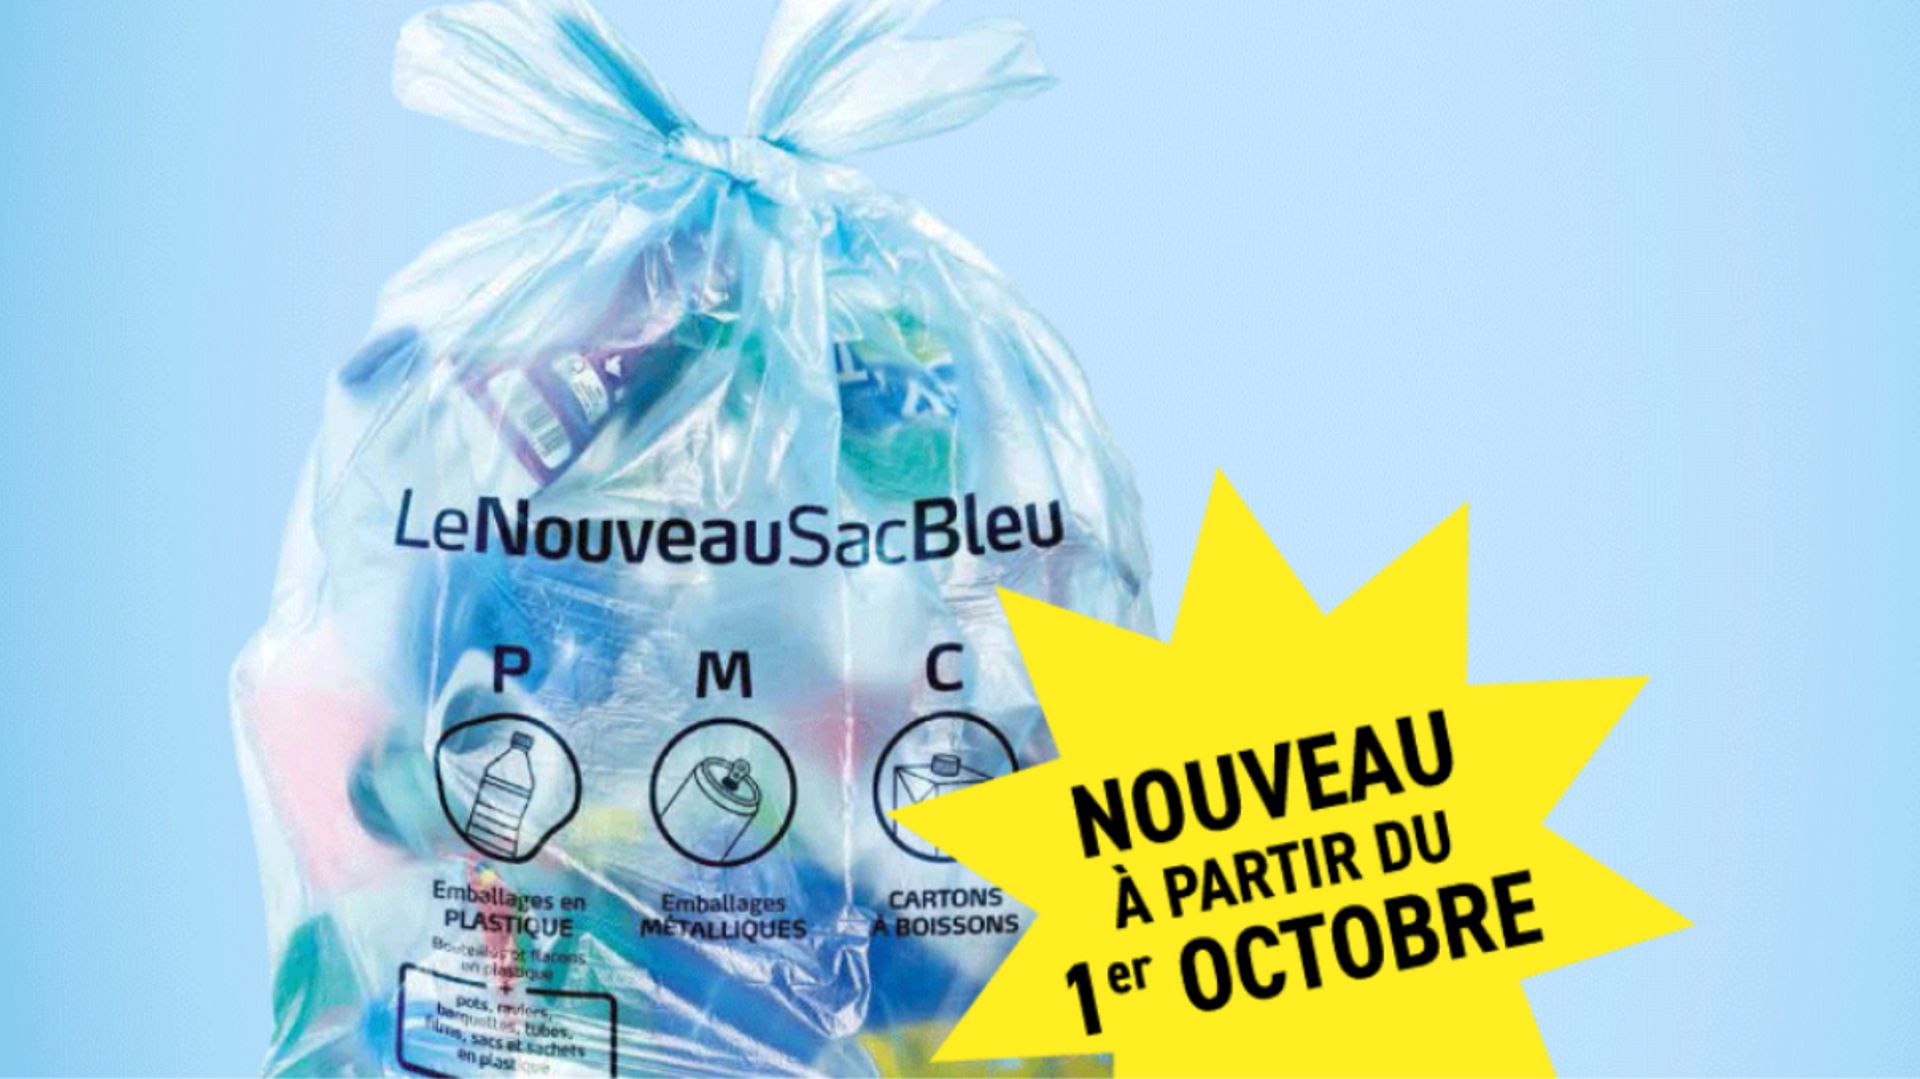 Le nouveau sac bleu débarque en province de Namur le 1er octobre, ainsi qu'à Héron en province de Liège.